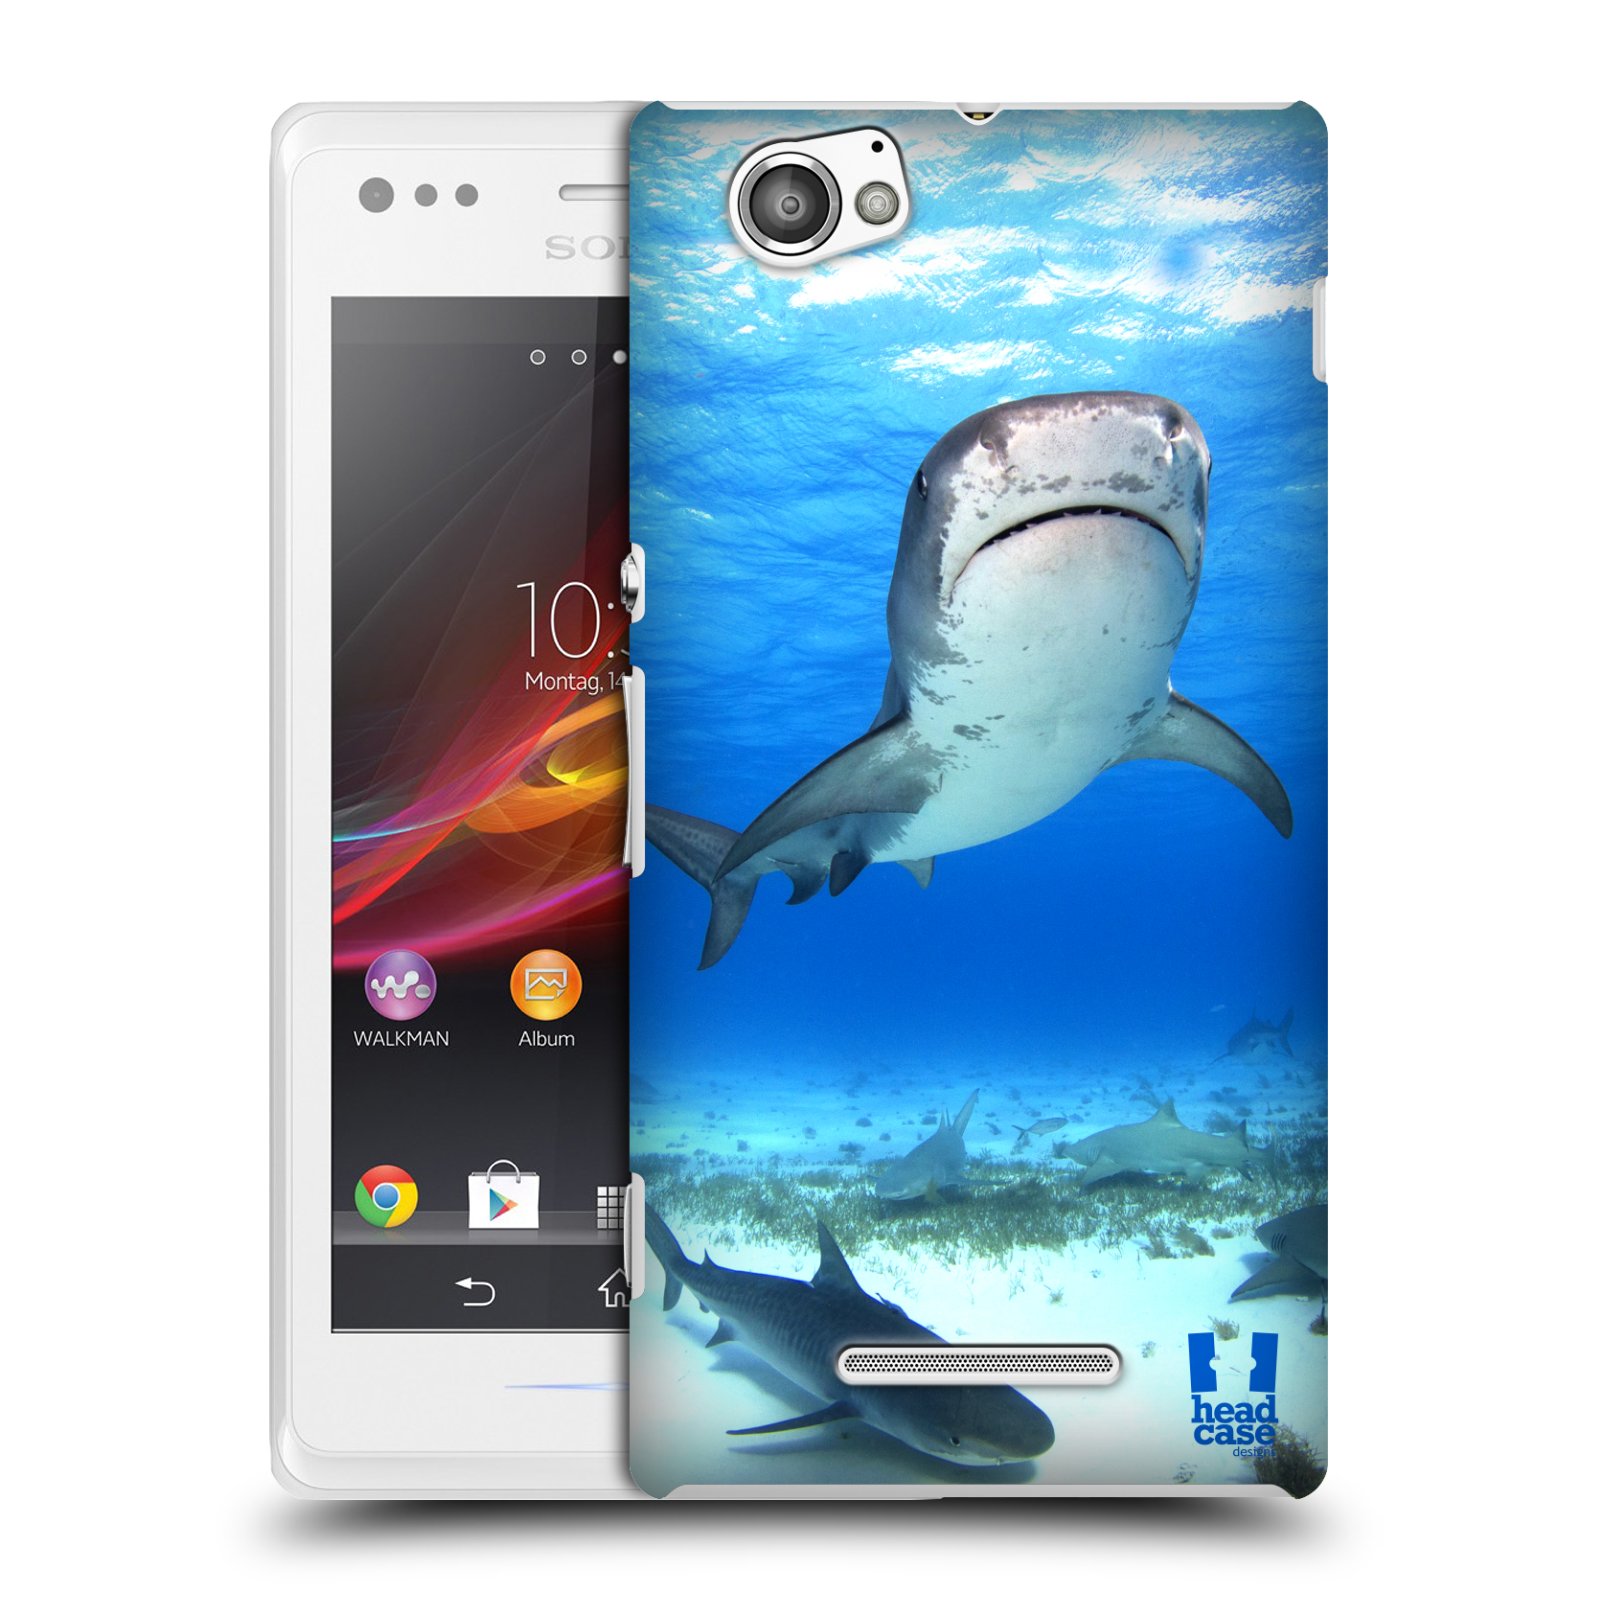 HEAD CASE plastový obal na mobil Sony Xperia M vzor slavná zvířata foto žralok tygří